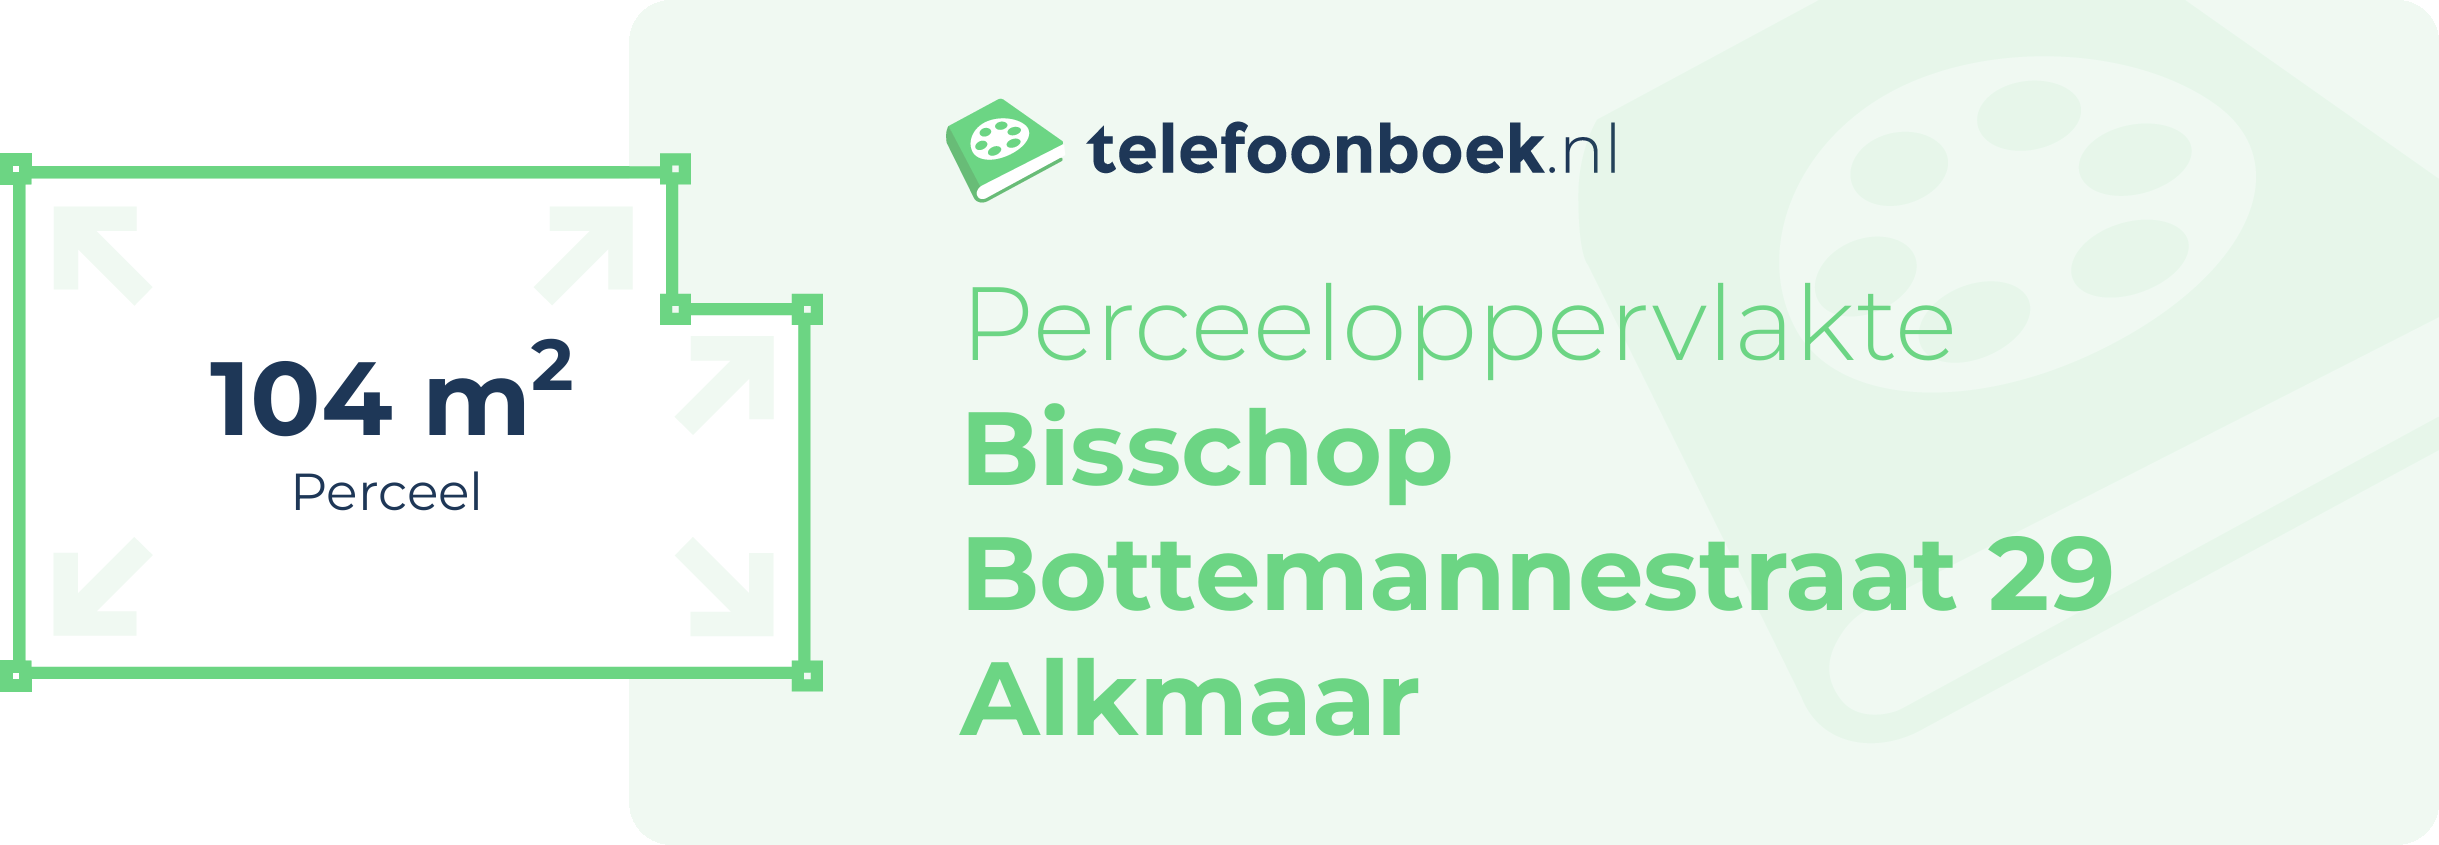 Perceeloppervlakte Bisschop Bottemannestraat 29 Alkmaar